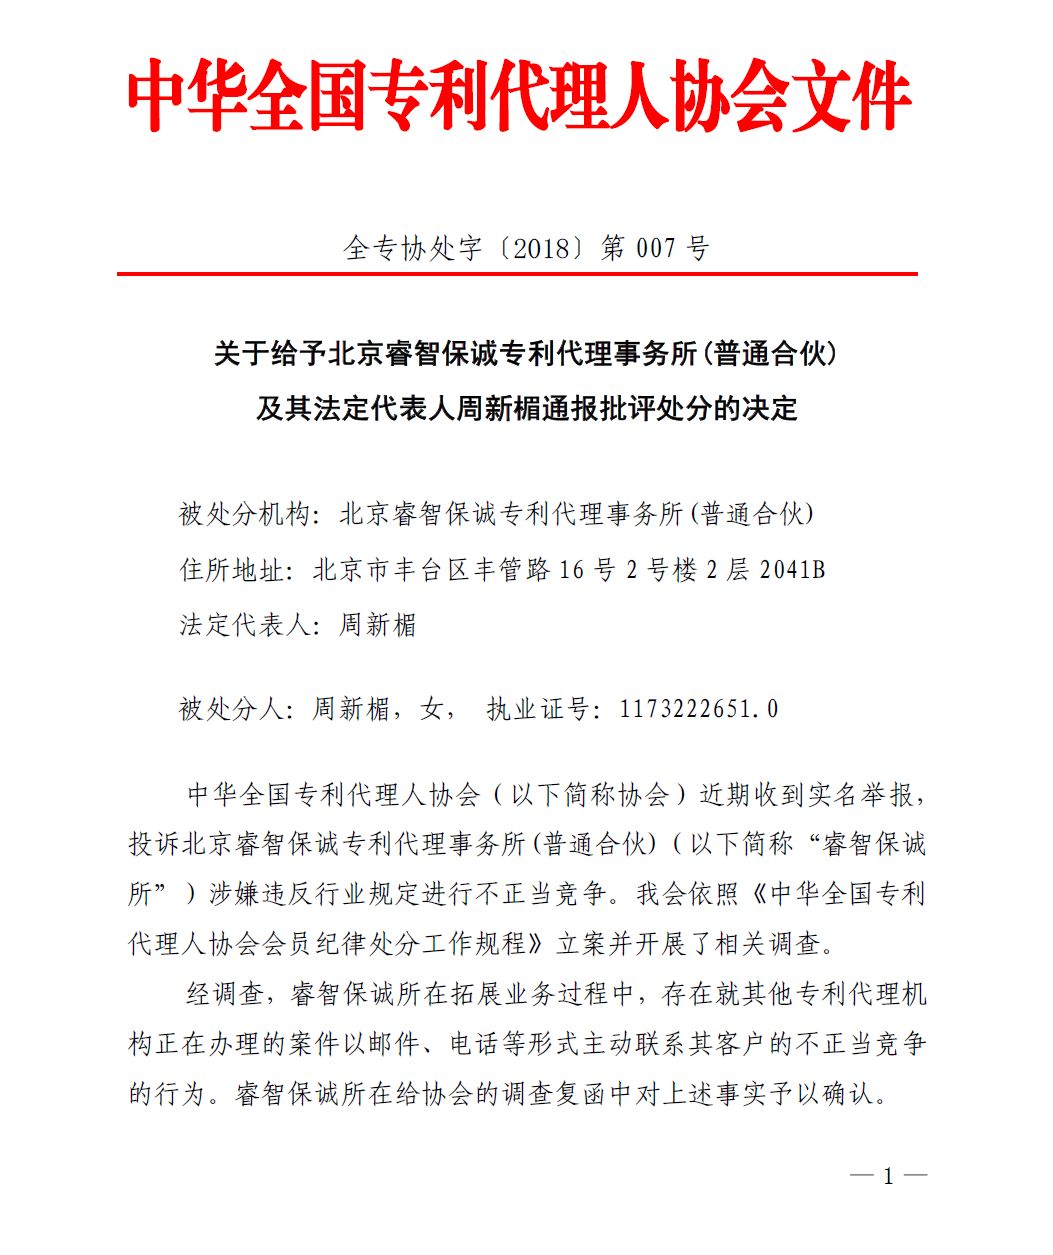 中华全国专代协会：给予北京睿智保诚专利代理事务所通报批评处分